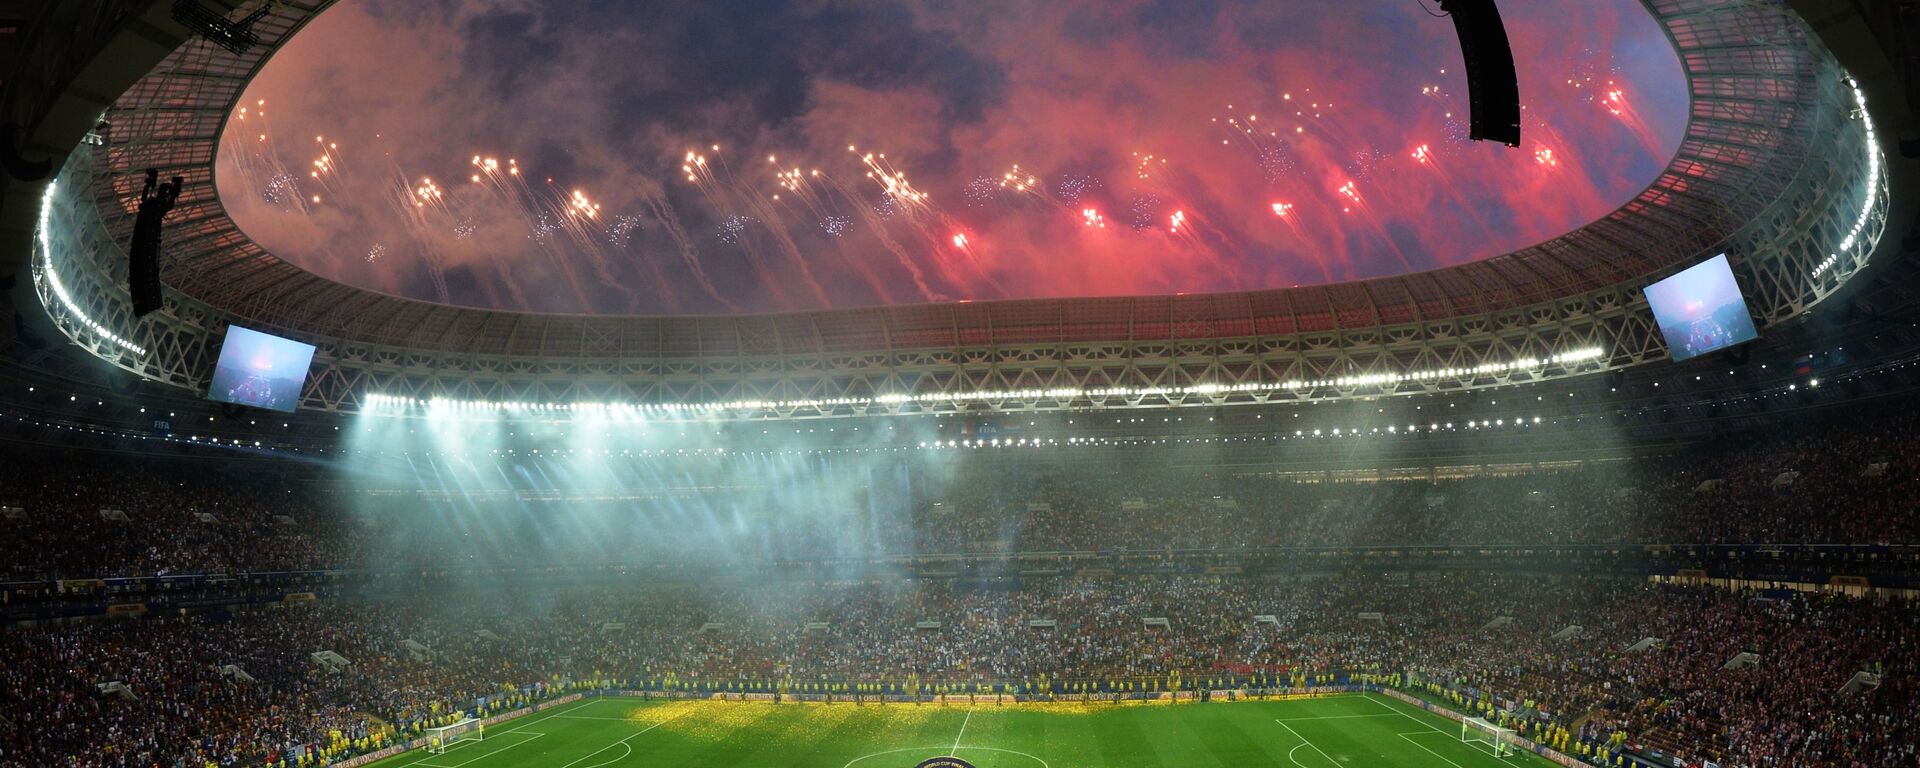 ألعاب نارية بمناسبة ختام بطولة كأس العالم فيفا لكرة القدم روسيا 2018 في ملعب لوجنيكي في موسكو - سبوتنيك عربي, 1920, 10.09.2022